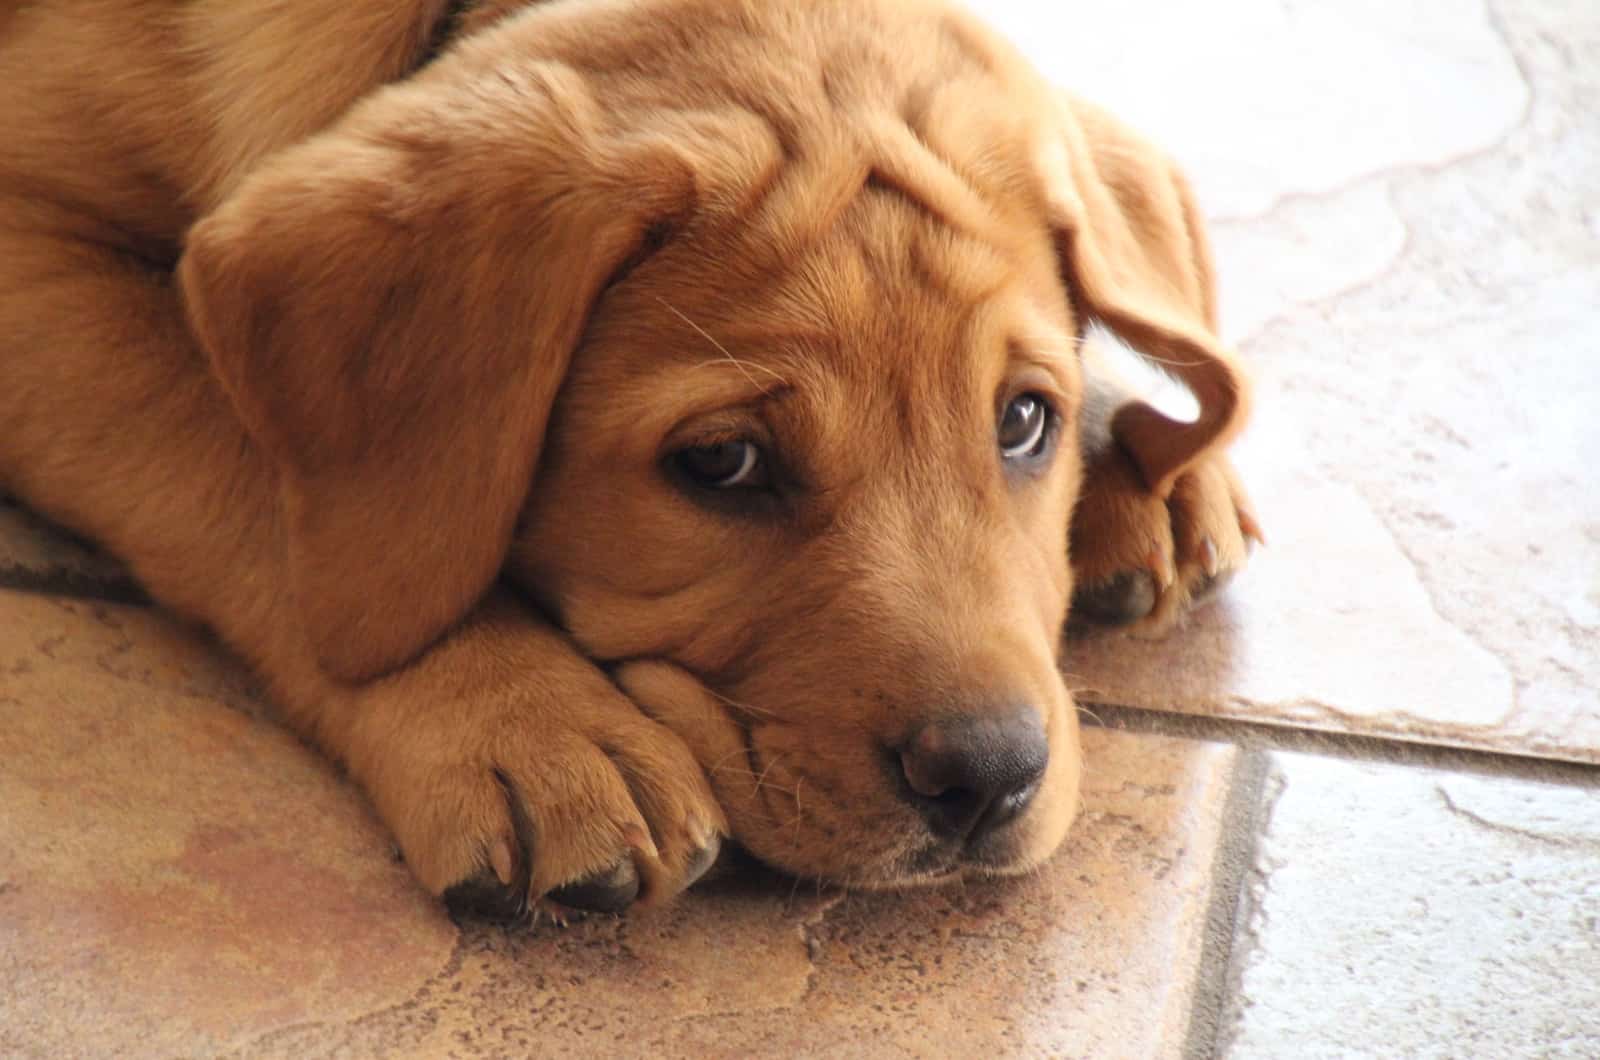 sad puppy on floor